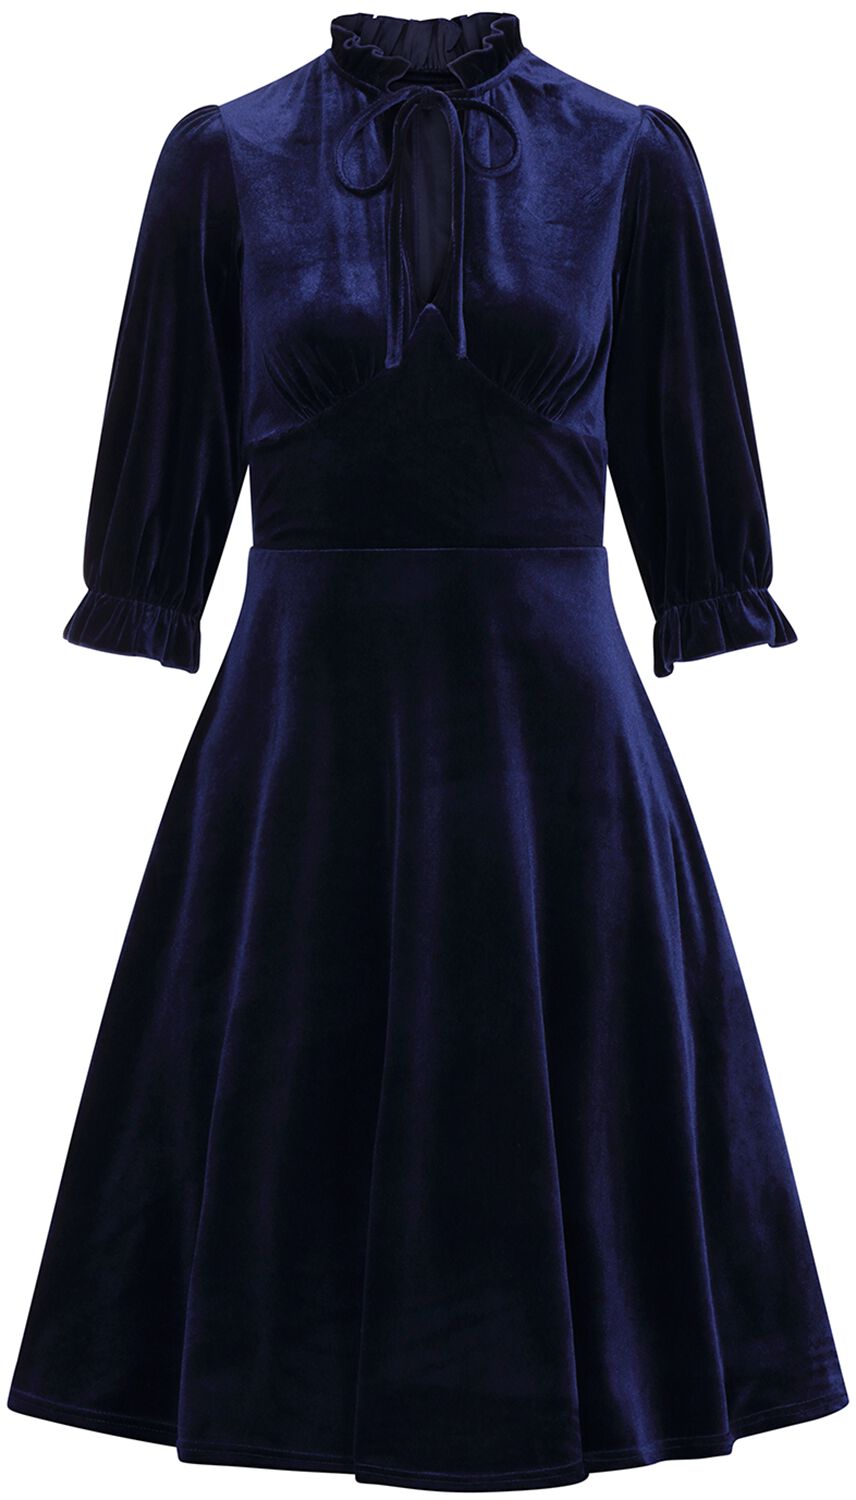 Hell Bunny - Rockabilly Kleid knielang - Orion Dress - XS bis 4XL - für Damen - Größe M - blau von hell bunny